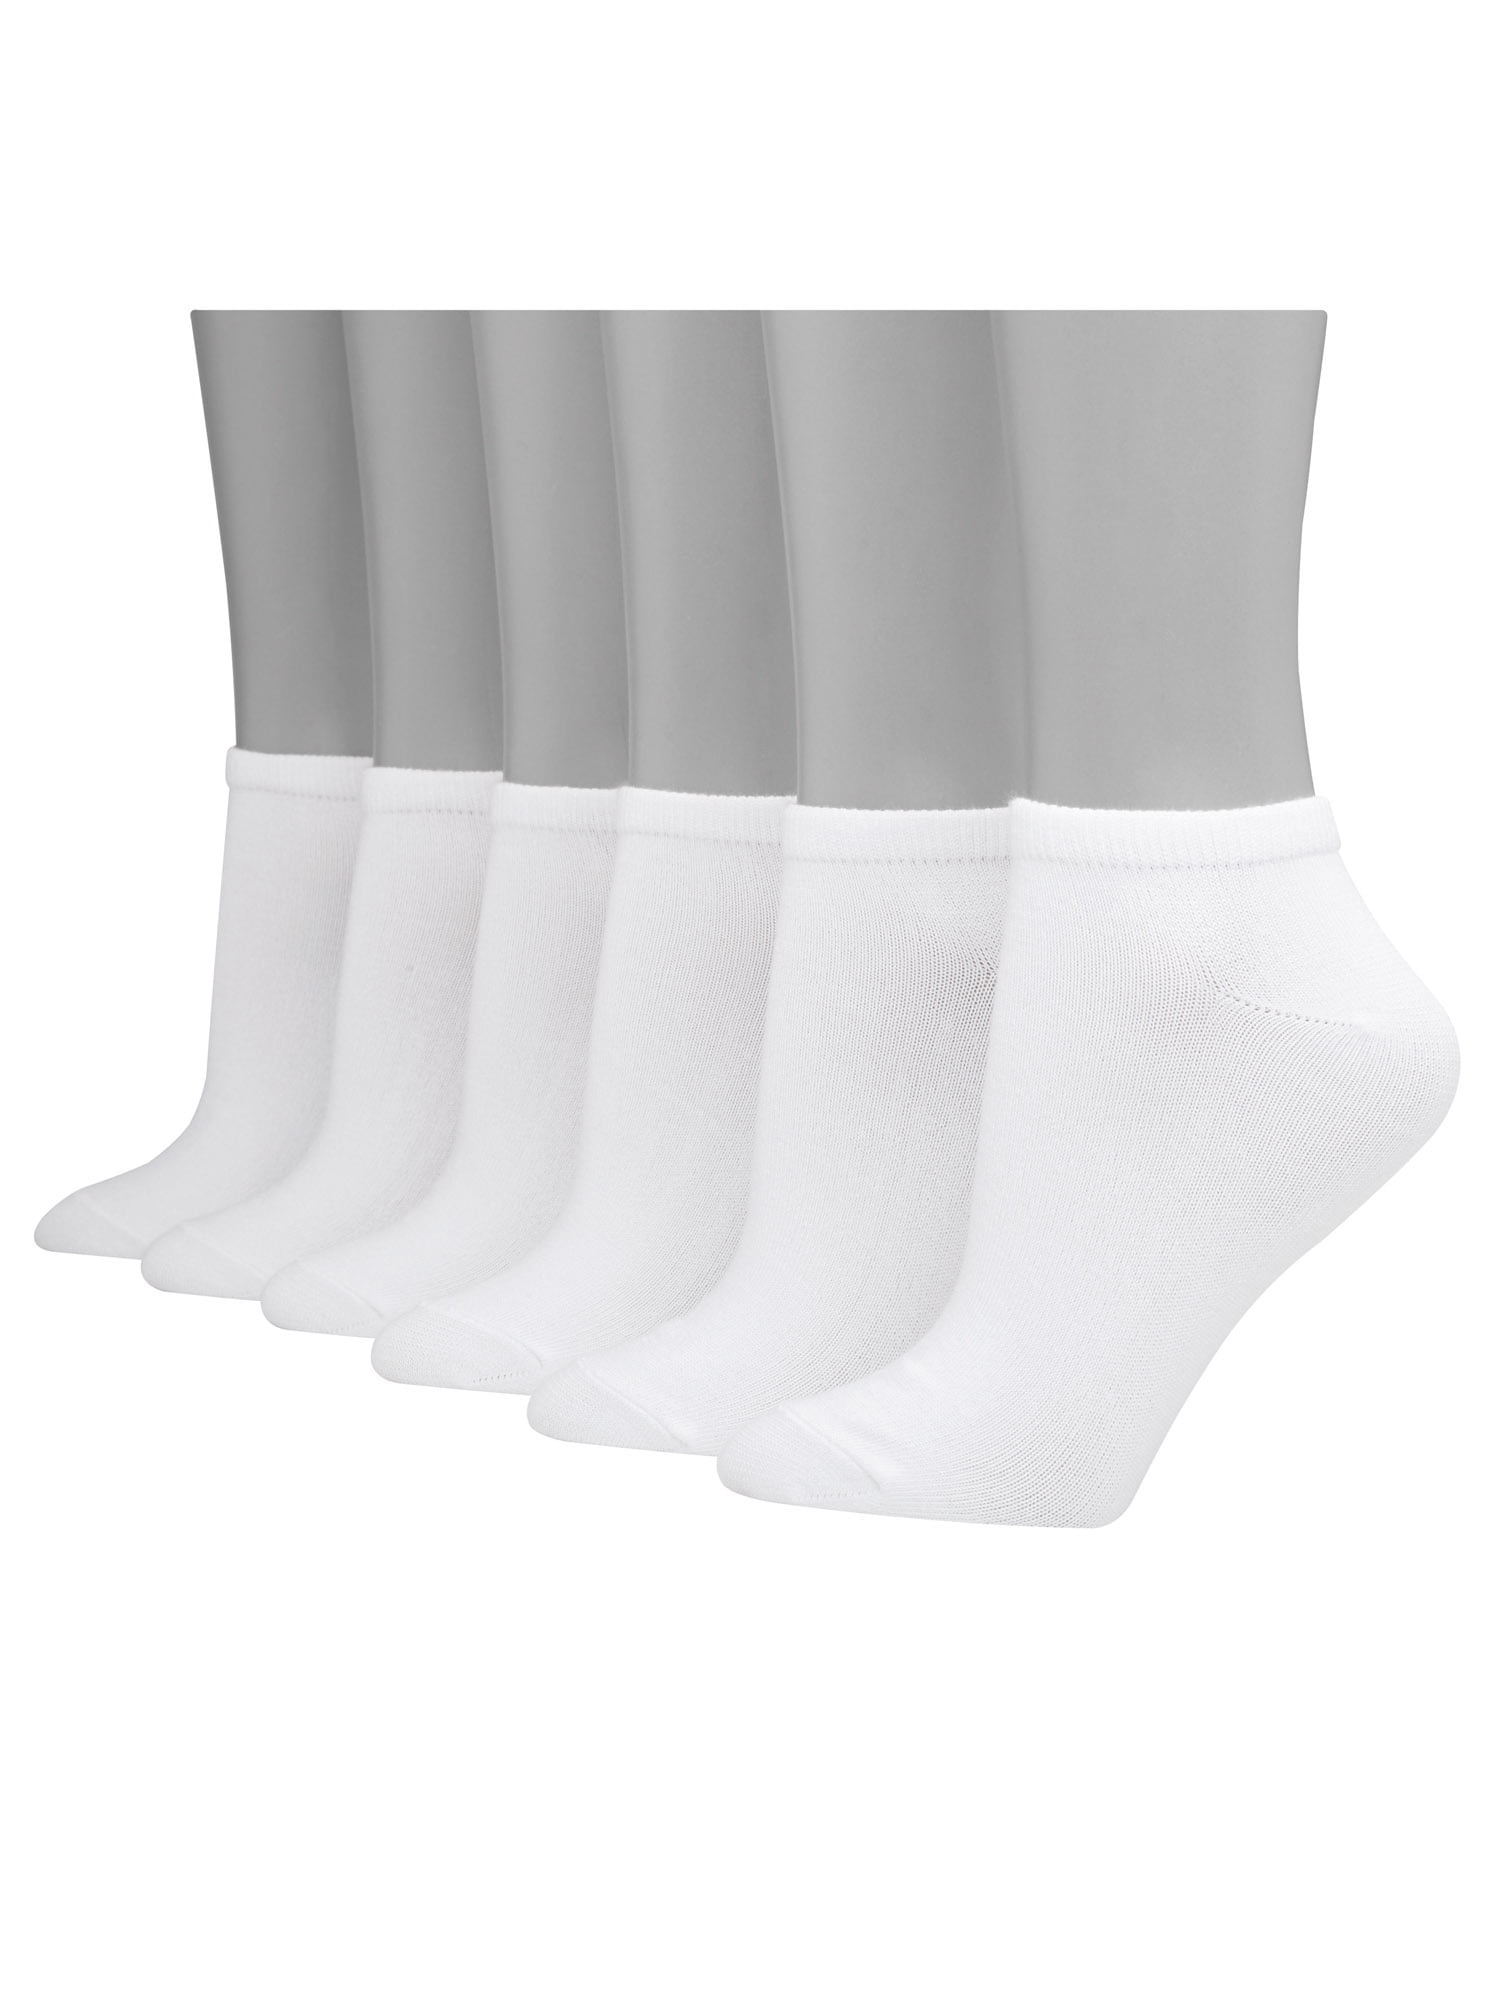 Women's ComfortSoft Low Cut Socks, 6 Pack - Walmart.com